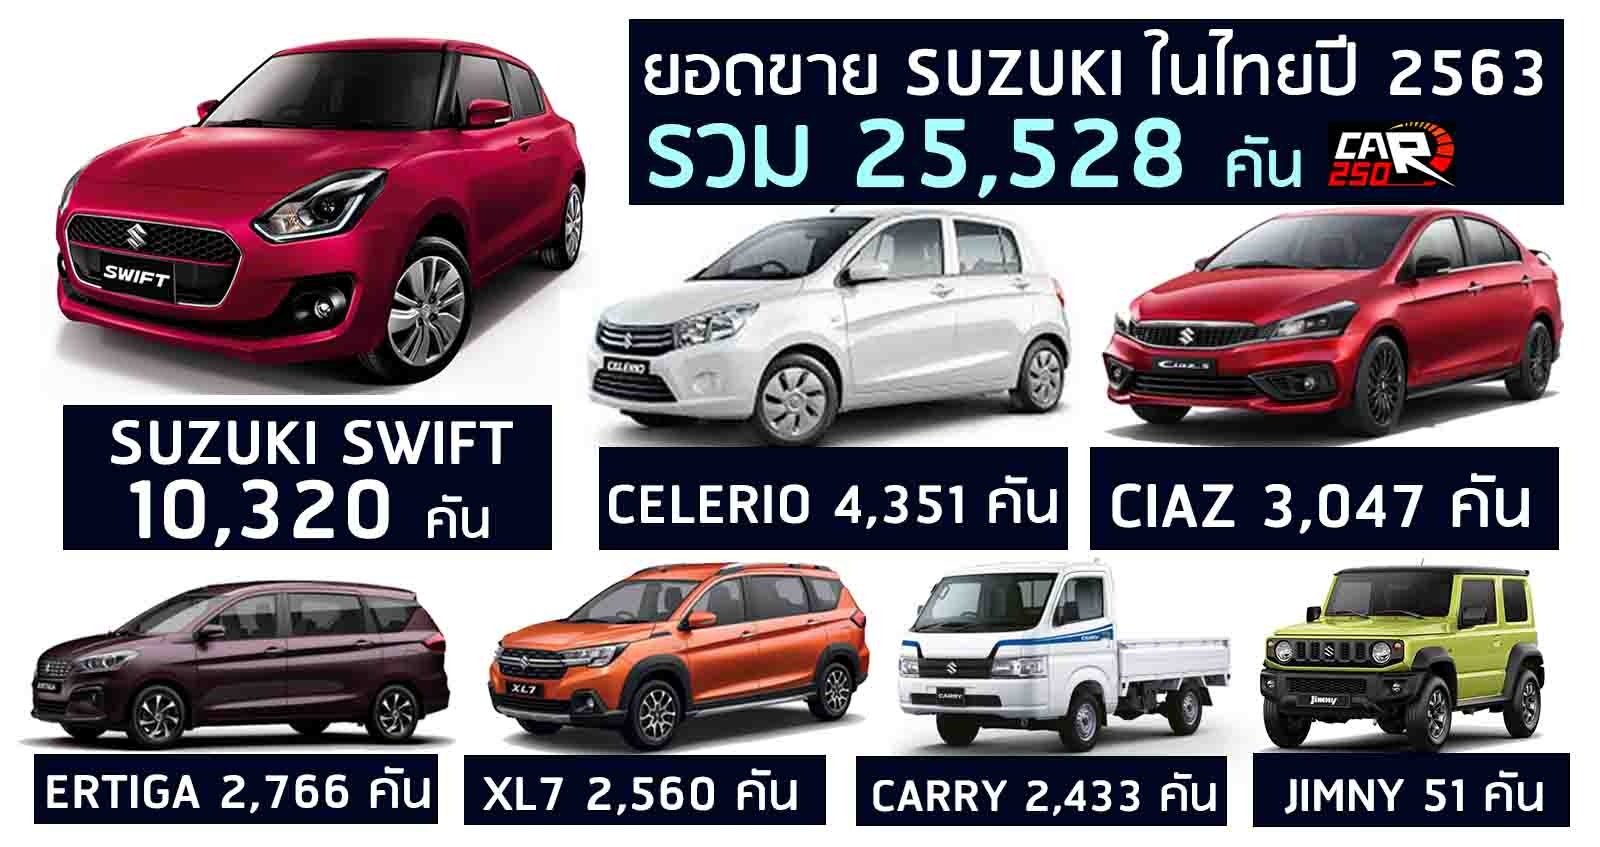 รวมยอดขาย SUZUKI ในไทย 25,528 คันในปี 2020